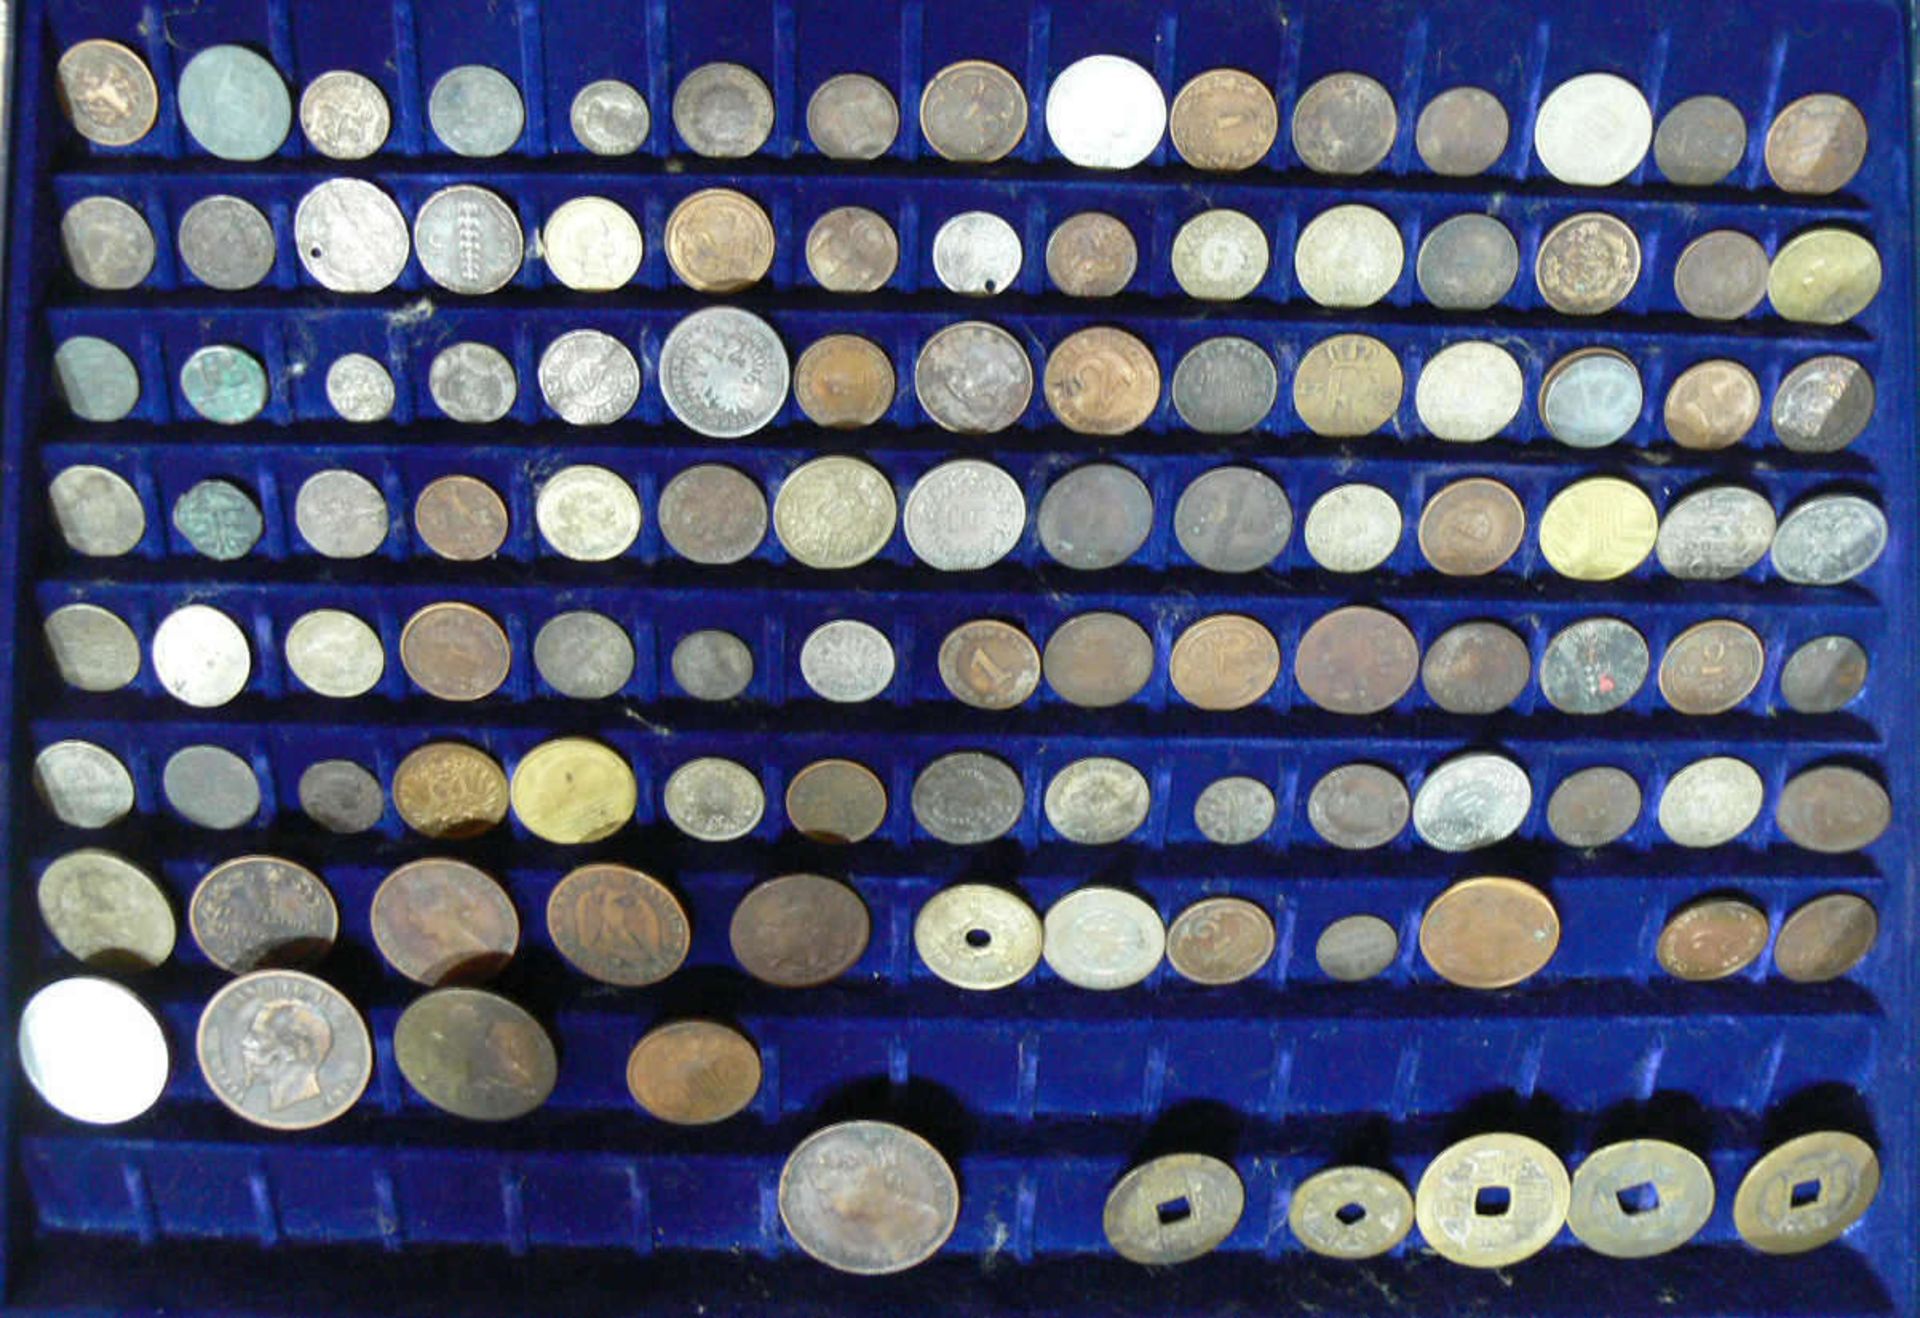 Großes Lot alte Münzen aus aller Welt aus dem 17. bis 19. Jahrhundert. Über 100 Stück. Darunter u.